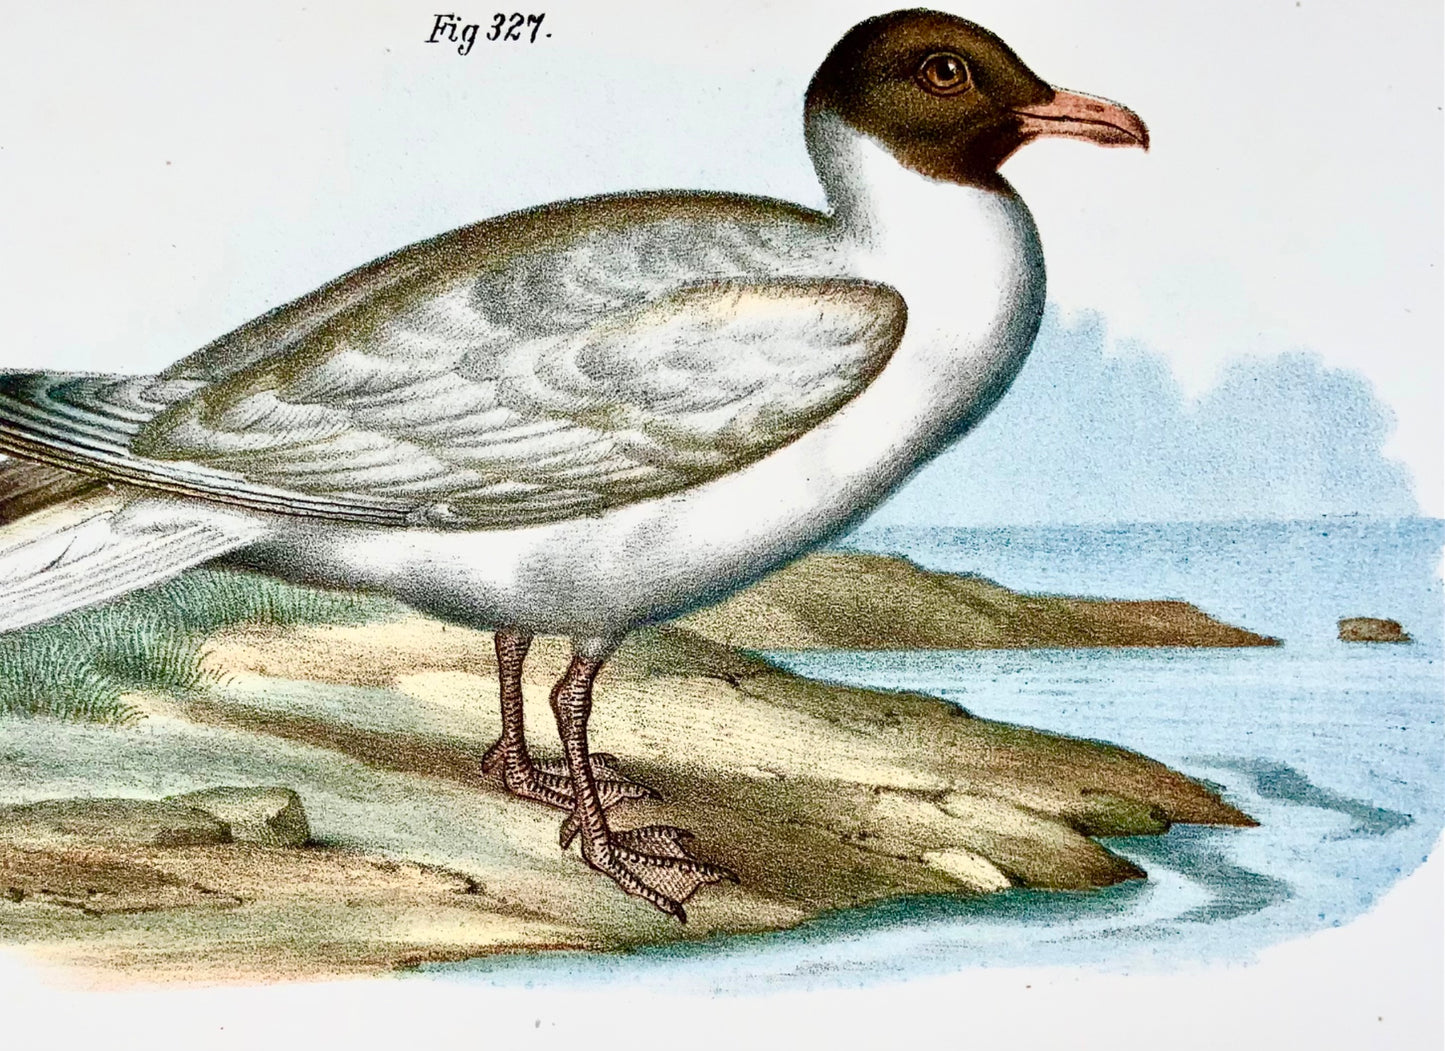 1860 SKUA SEAGULL - Uccelli - Litografia a colori Fitzinger FOLIO con colore a mano